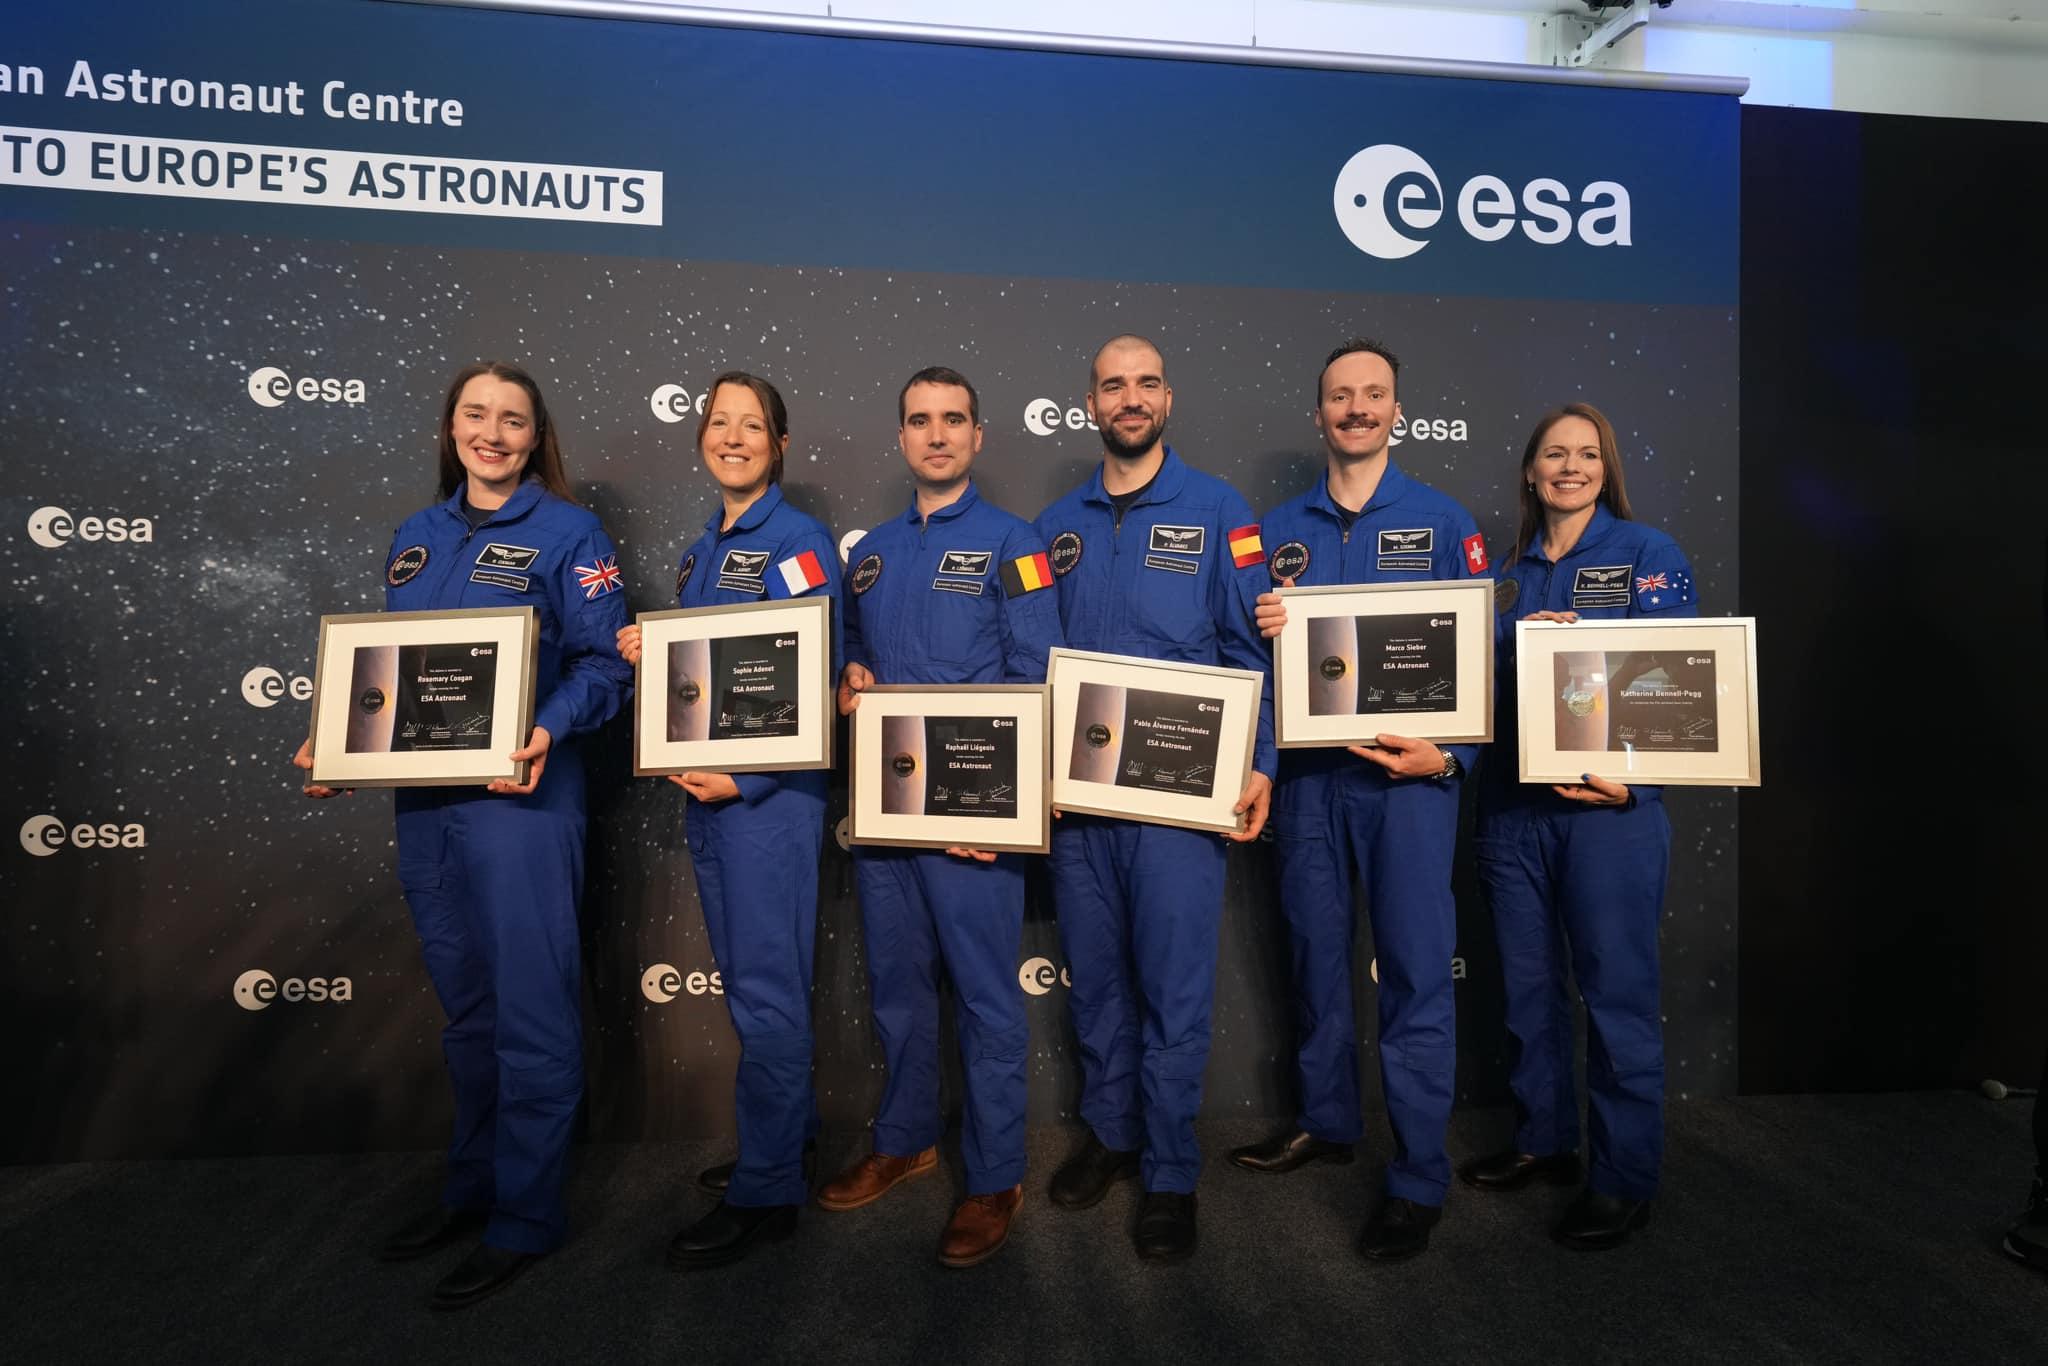 De nieuwe Europese astronauten - Met diploma